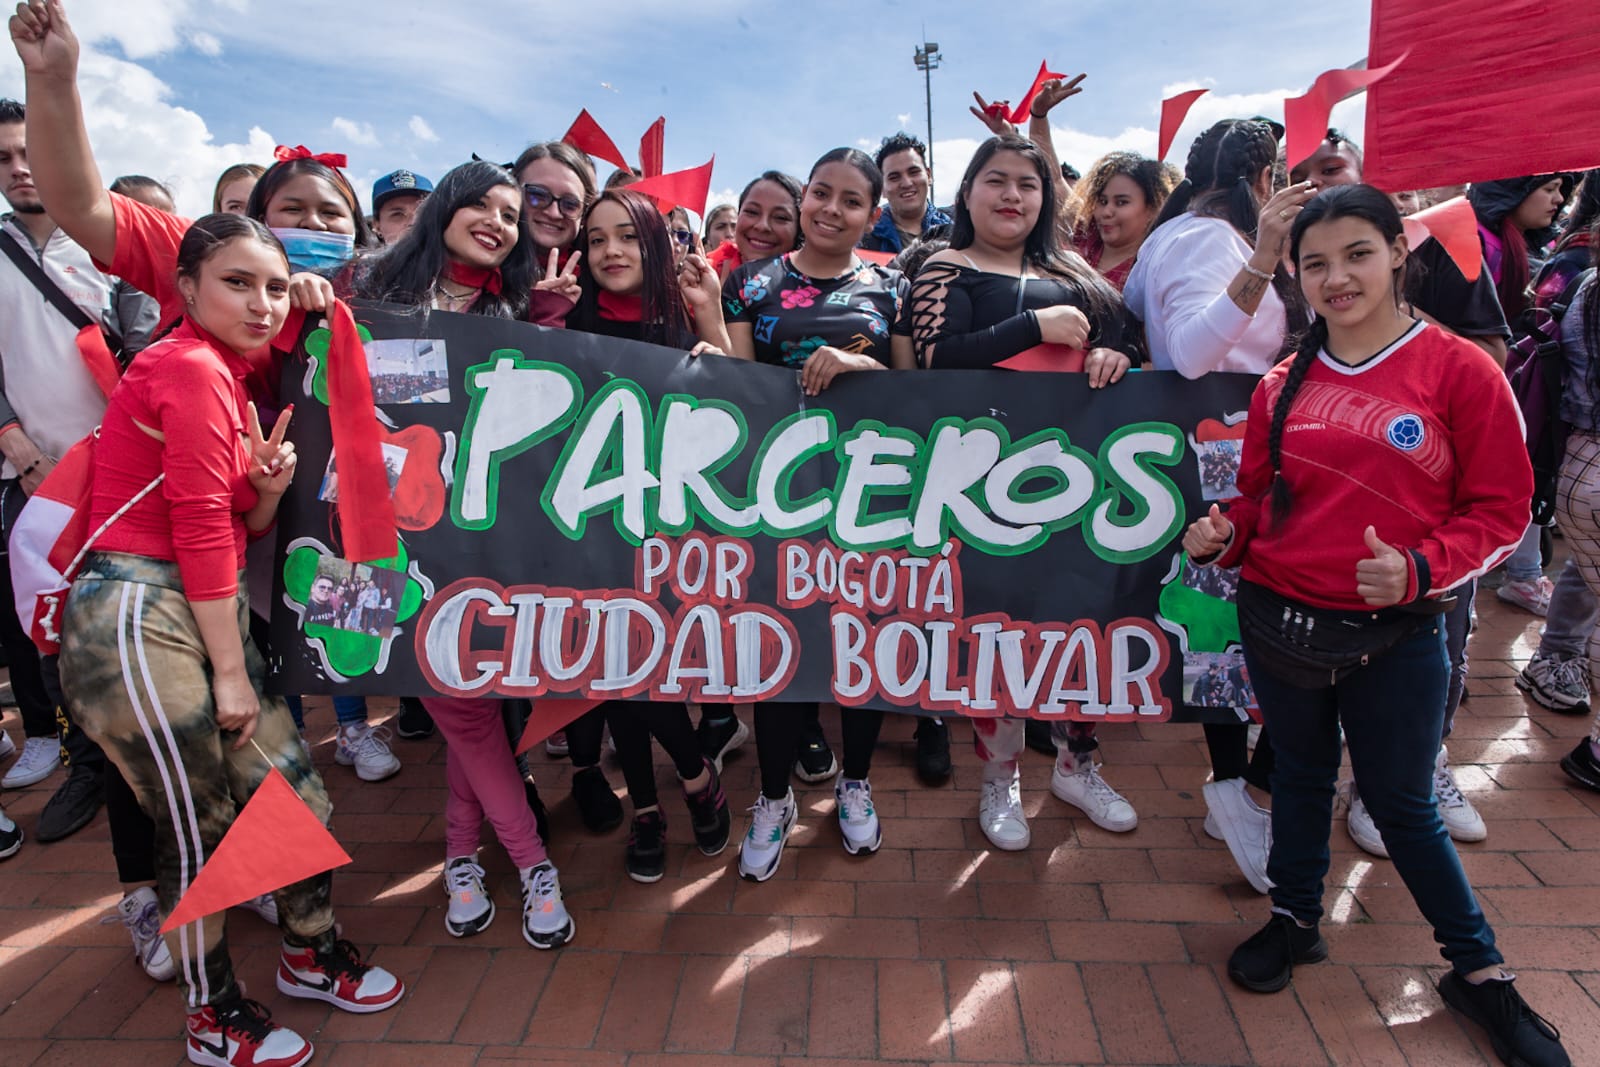 1.000 jóvenes de “Parceros por Bogotá” participan en la gran Olimpiada por la vida en el marco de los festejos por el cumpleaños 485 de la capital.